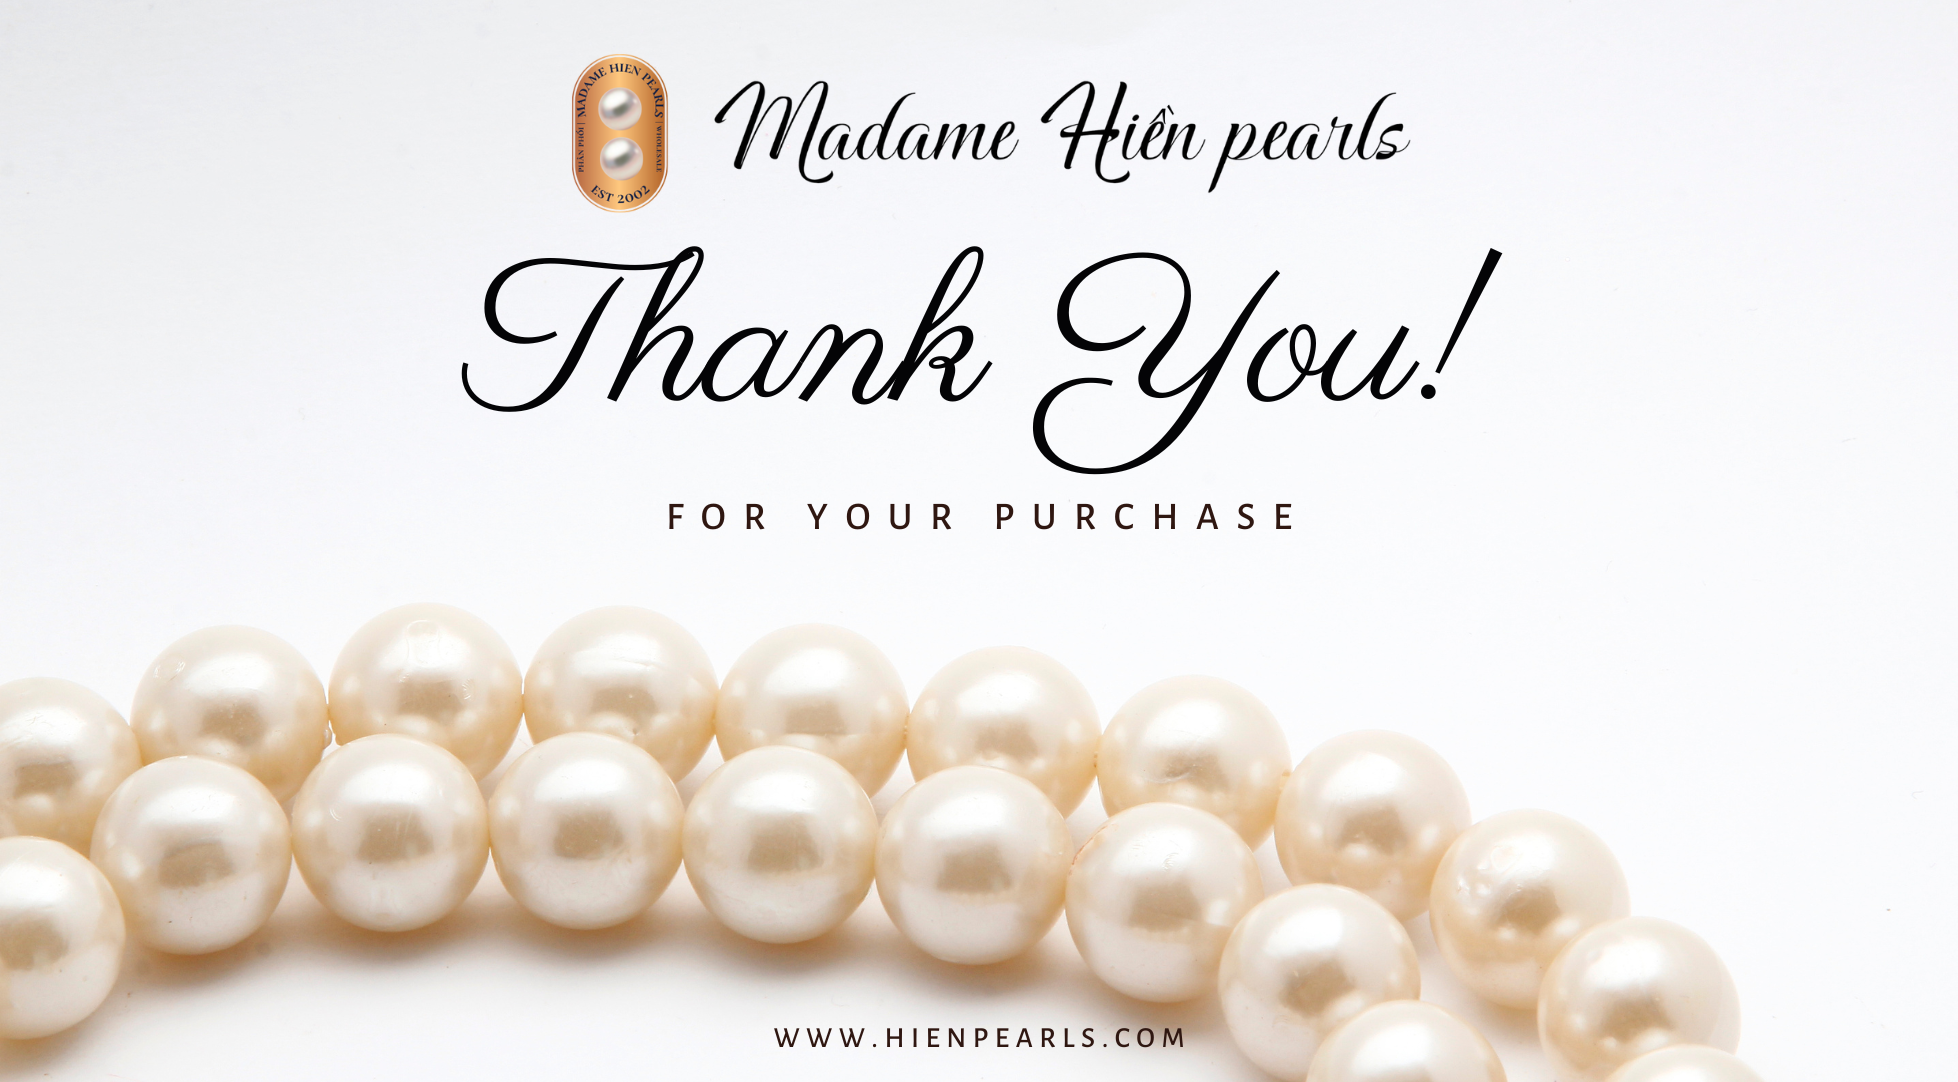 Madame Hiền Pearls chuyên cung cấp đa dạng các loại phụ kiện ngọc trai